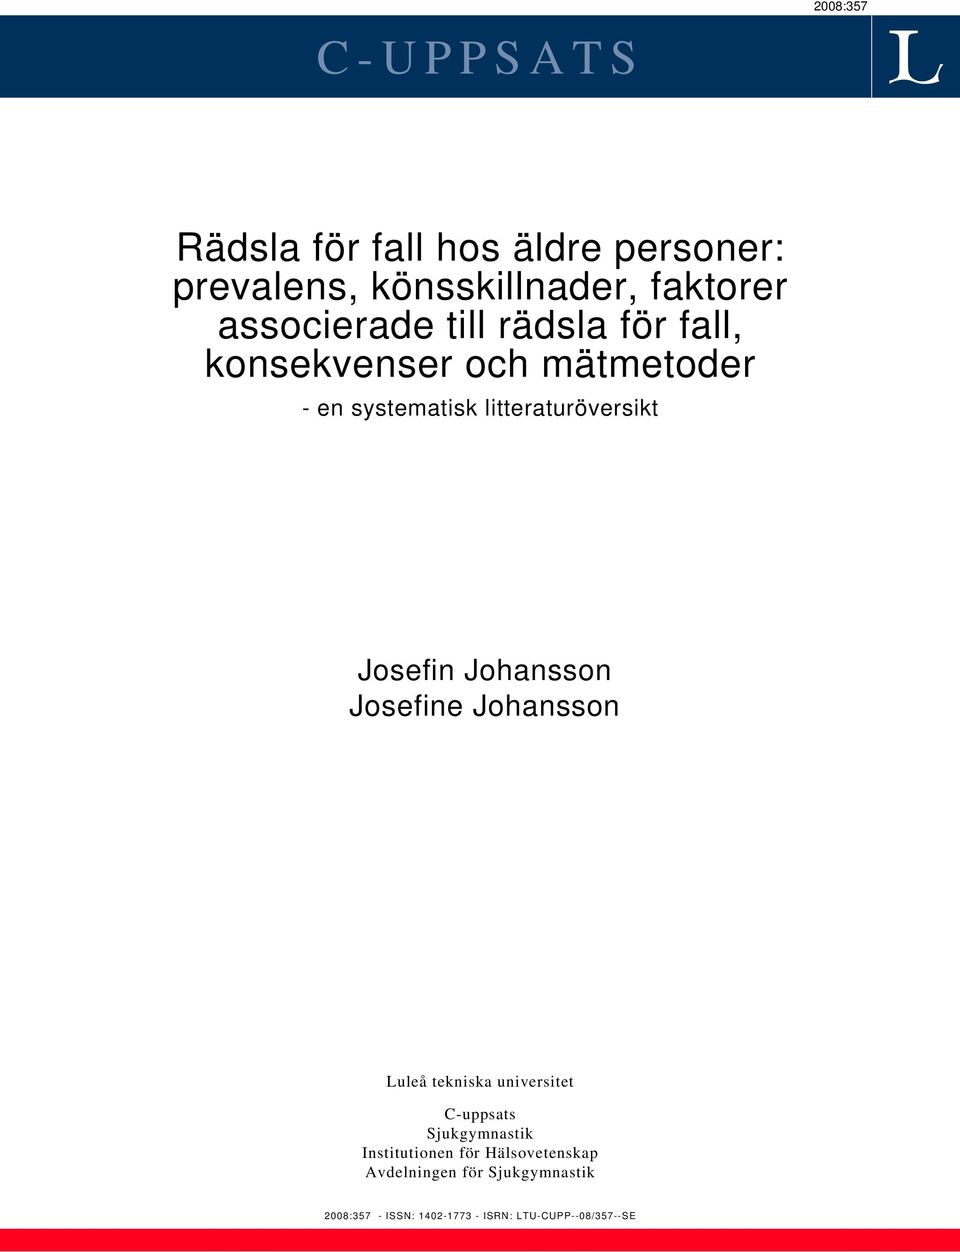 Josefin Johansson Josefine Johansson Luleå tekniska universitet C-uppsats Sjukgymnastik